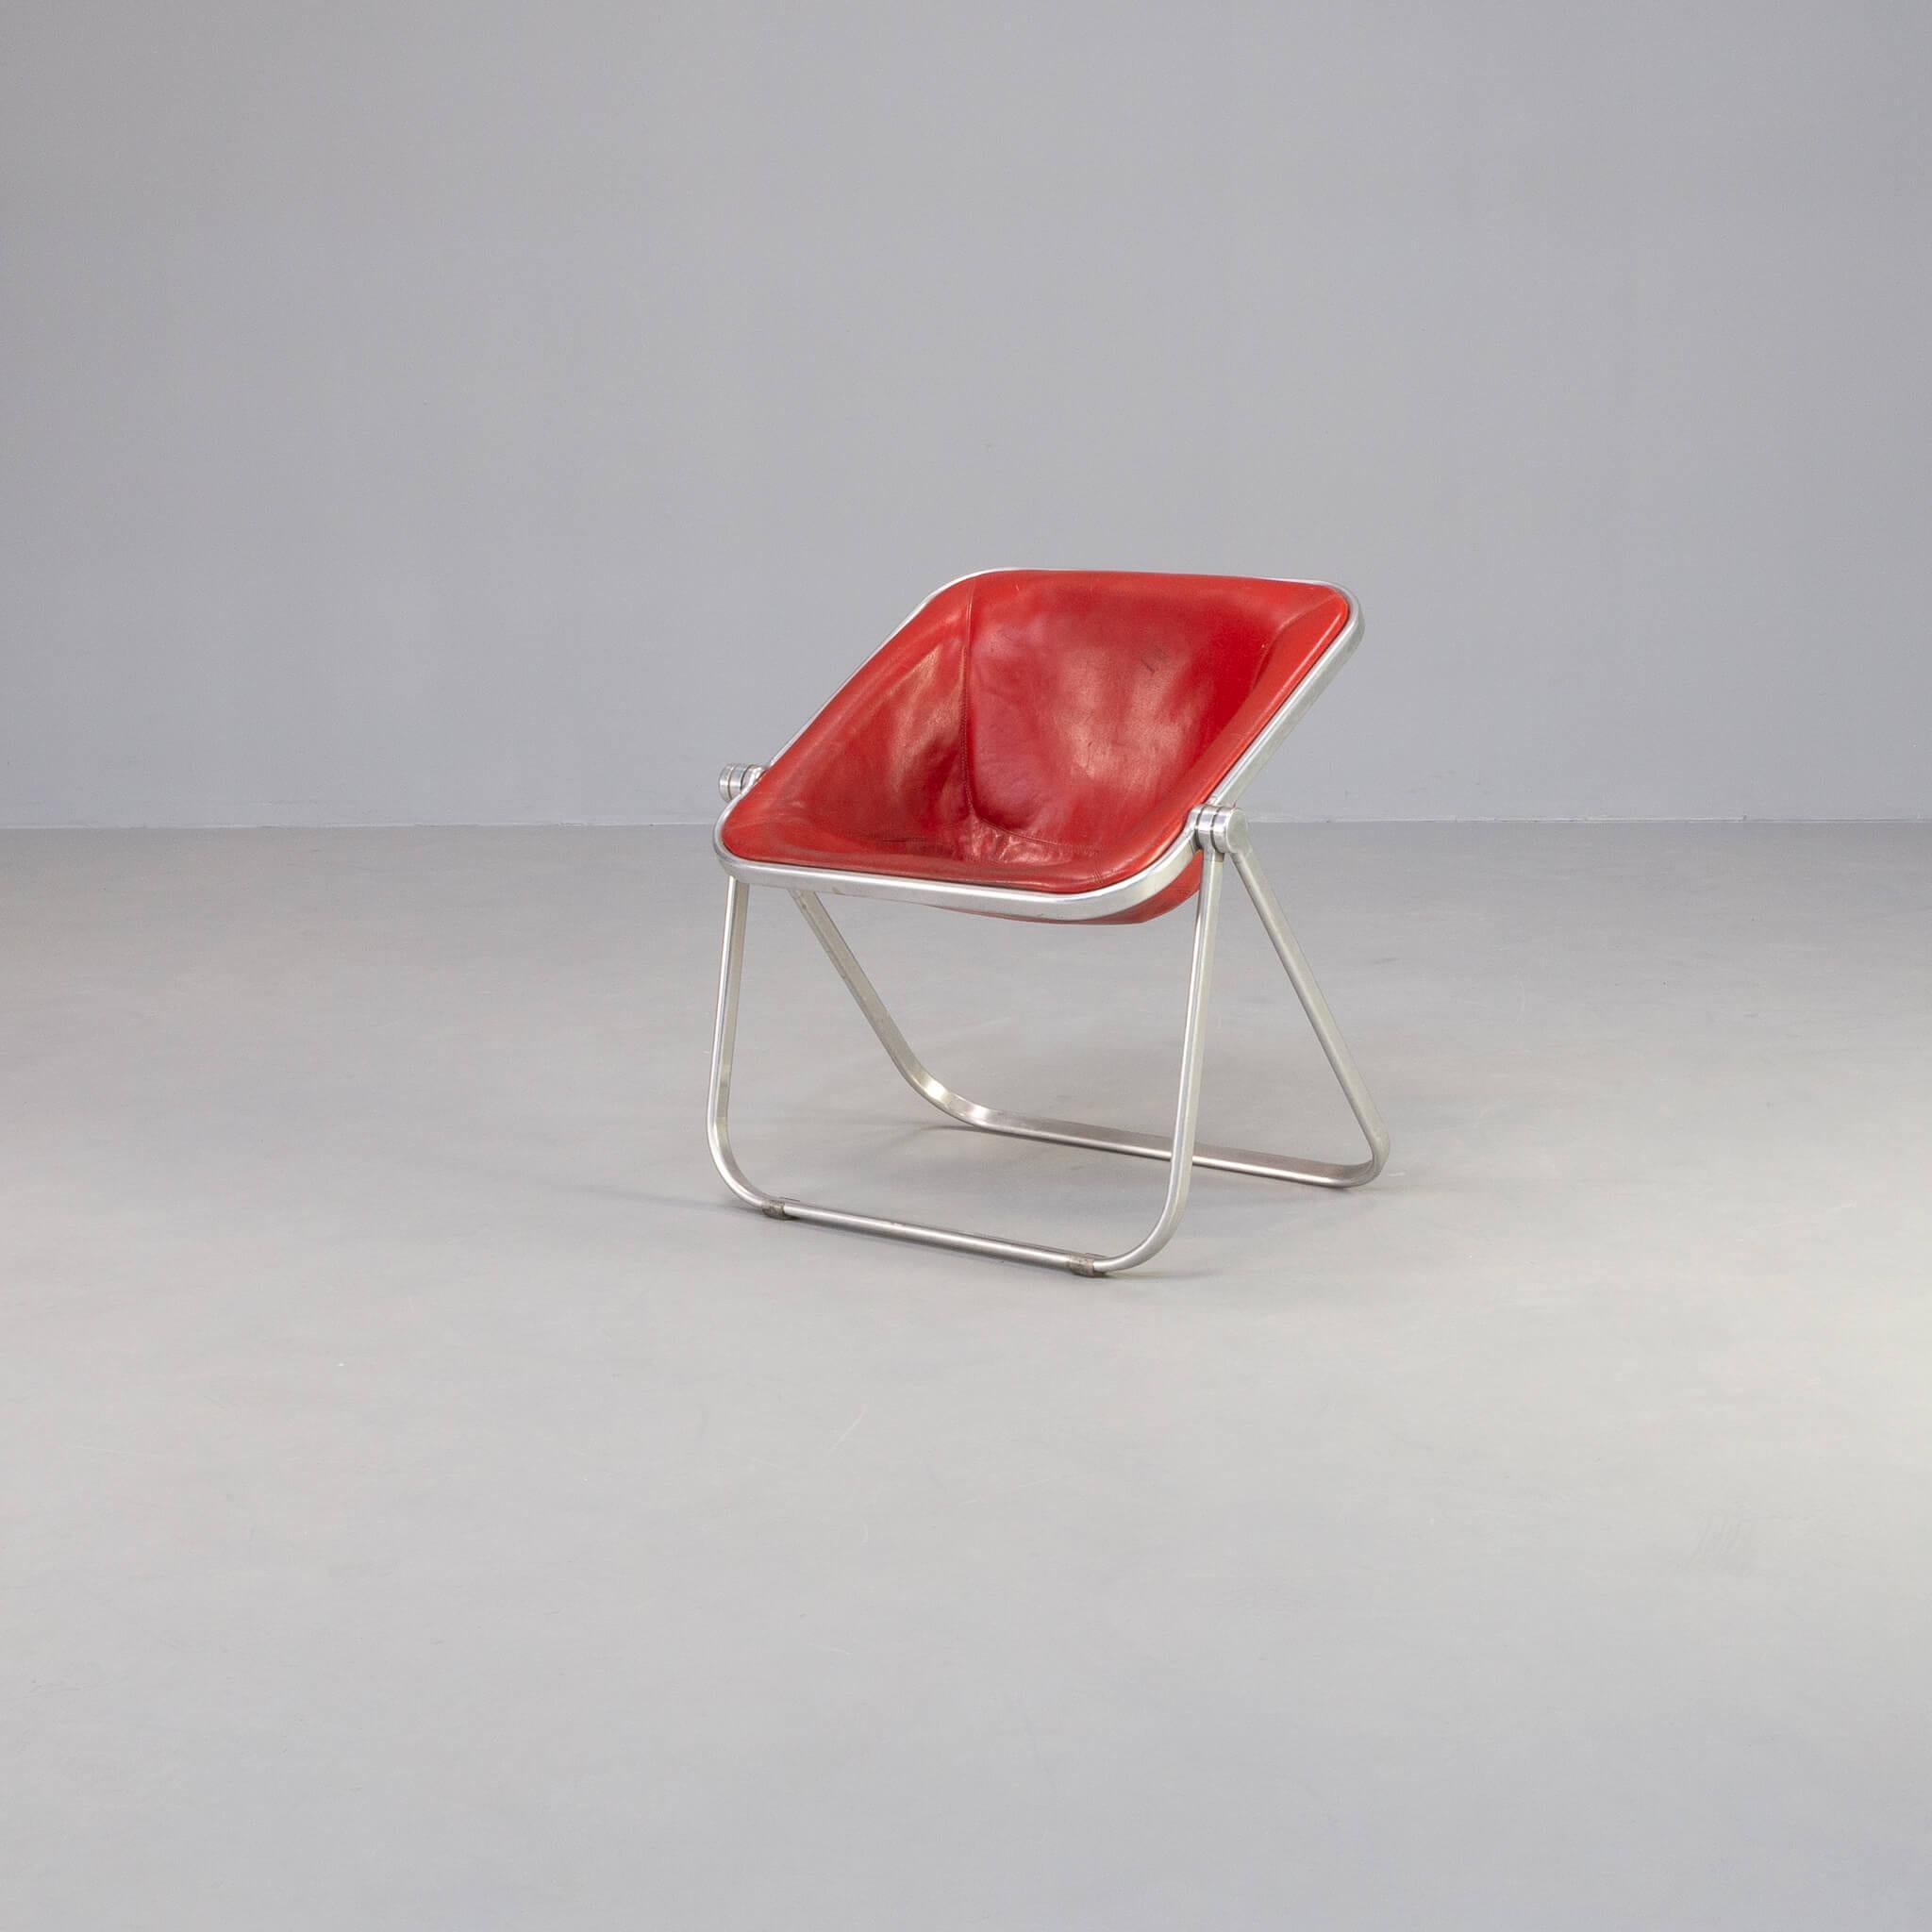 Giancarlo Piretti entwarf 1969 für Castelli diesen faltbaren und bequemen Plona-Sessel. Dieser Loungesessel wurde 1967 aus dem preisgekrönten Plona-Stuhl entwickelt. Der Stuhl ist faltbar und bietet dennoch den Komfort eines Loungesessels durch die